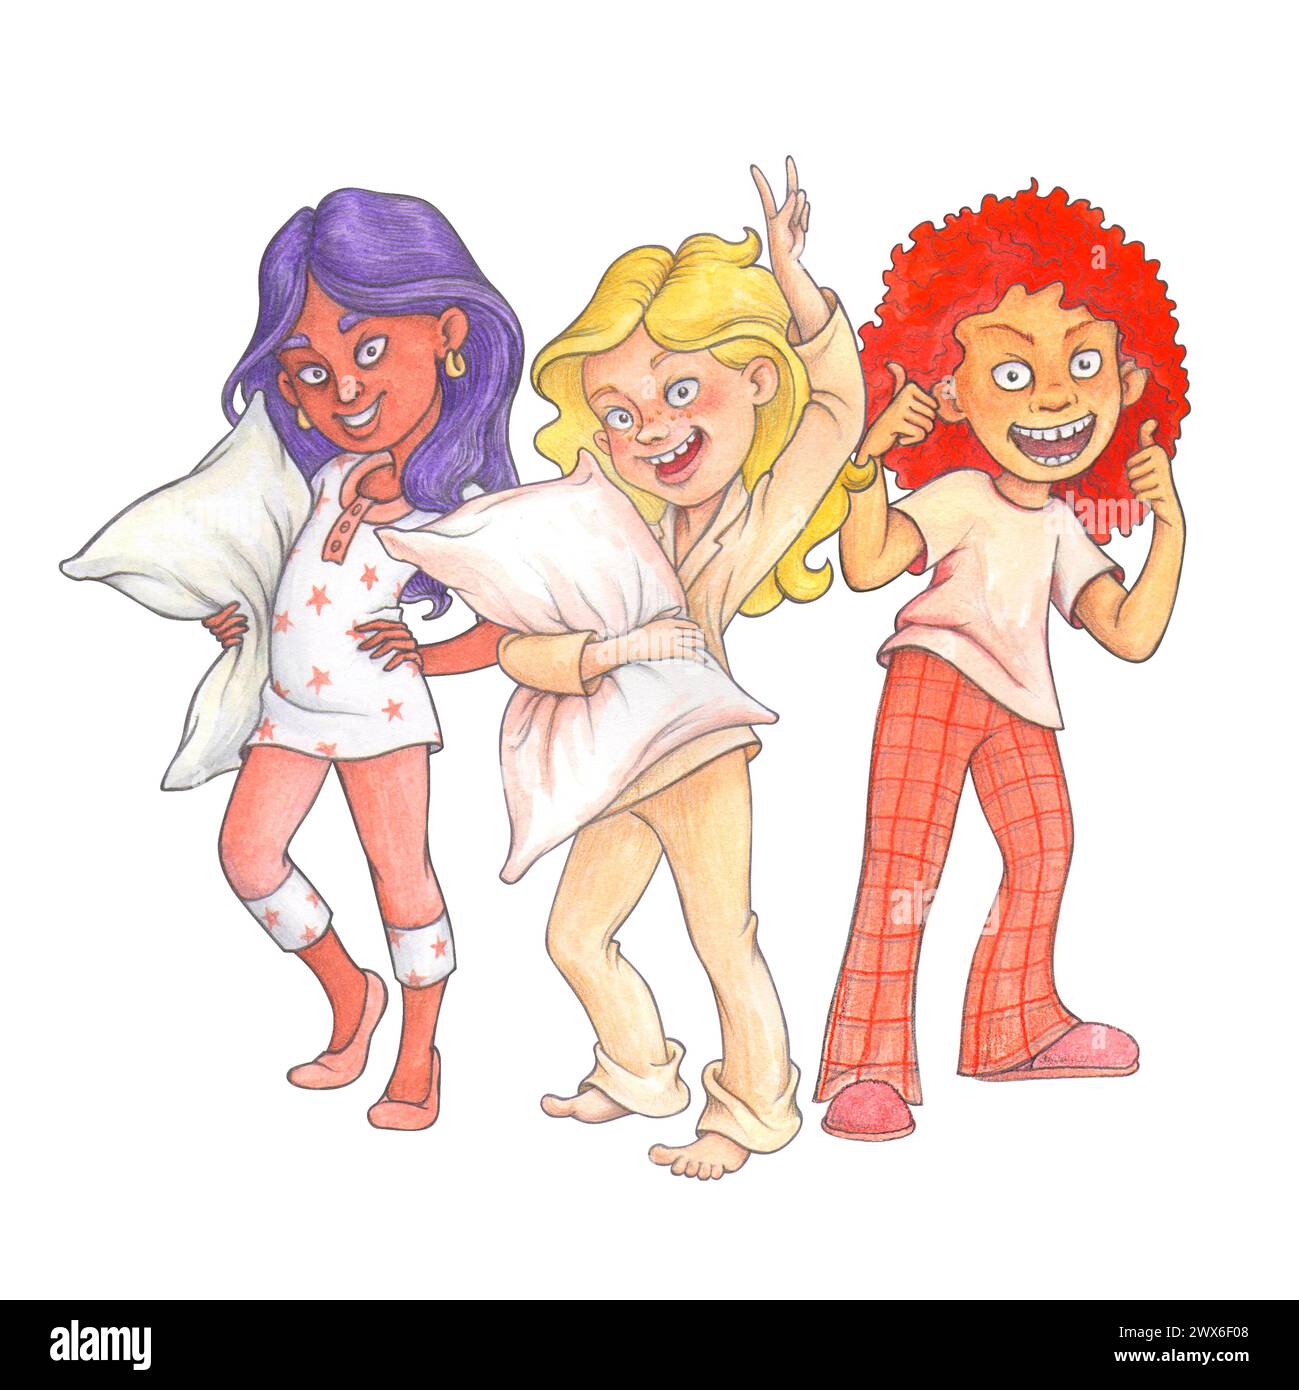 Groupe de jeunes filles pré-adolescentes riantes en pyjama avec des oreillers, se préparant pour une fête pj. Composition d'aquarelle isolée pour la conception de T-shirt, pyjama voiture de jour Banque D'Images